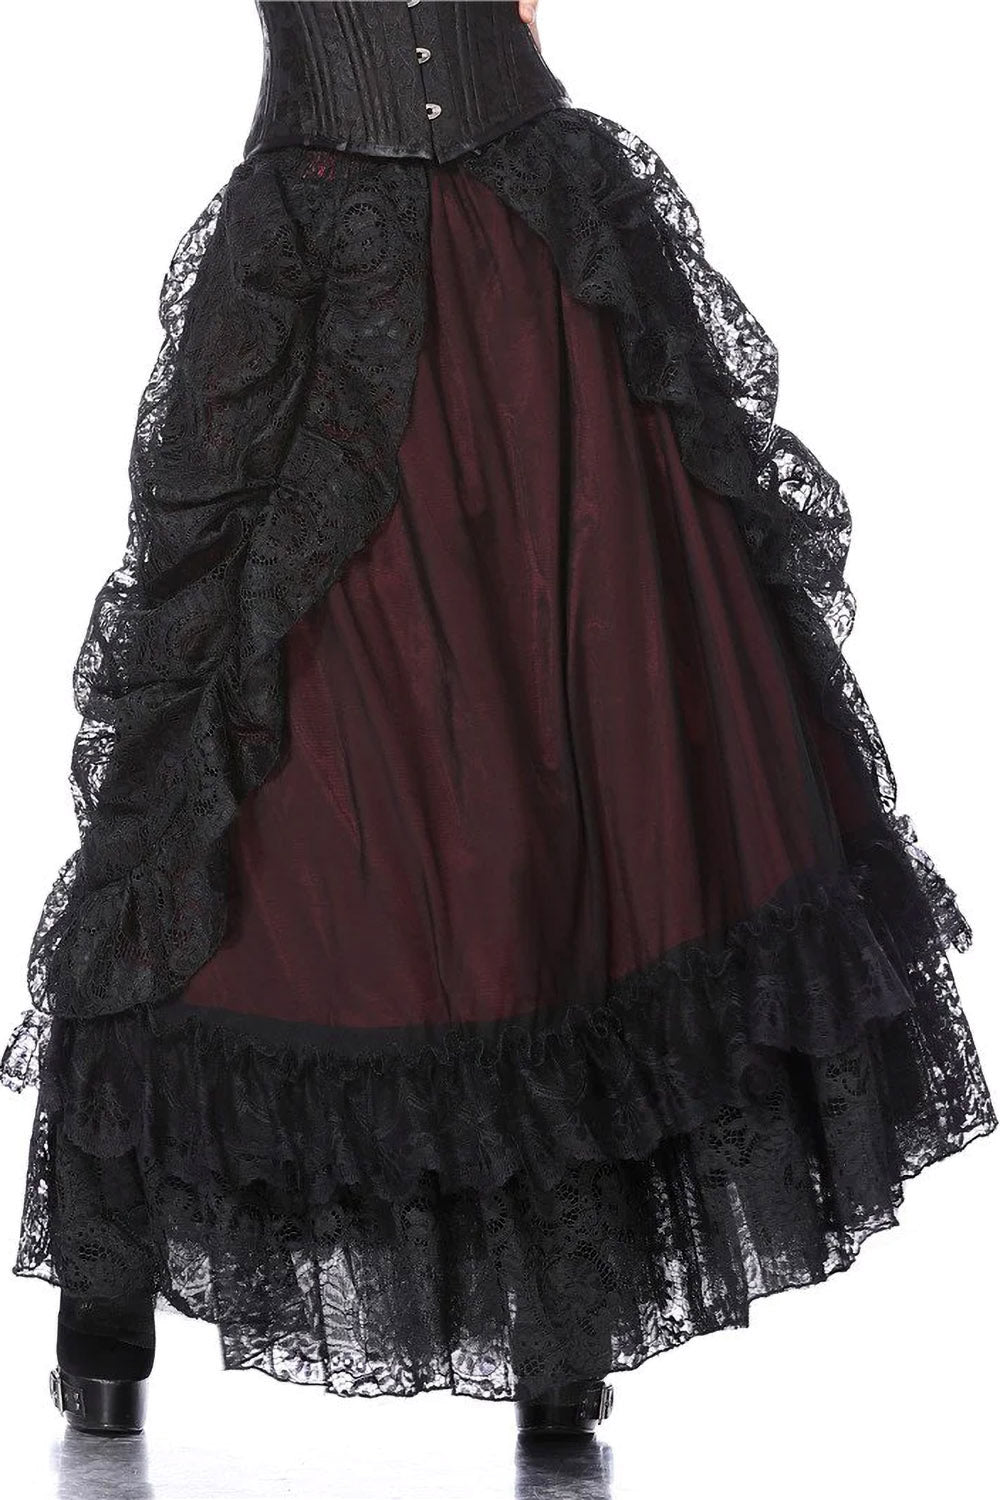 Vampire Goth Maxi Skirt [RED] – VampireFreaks